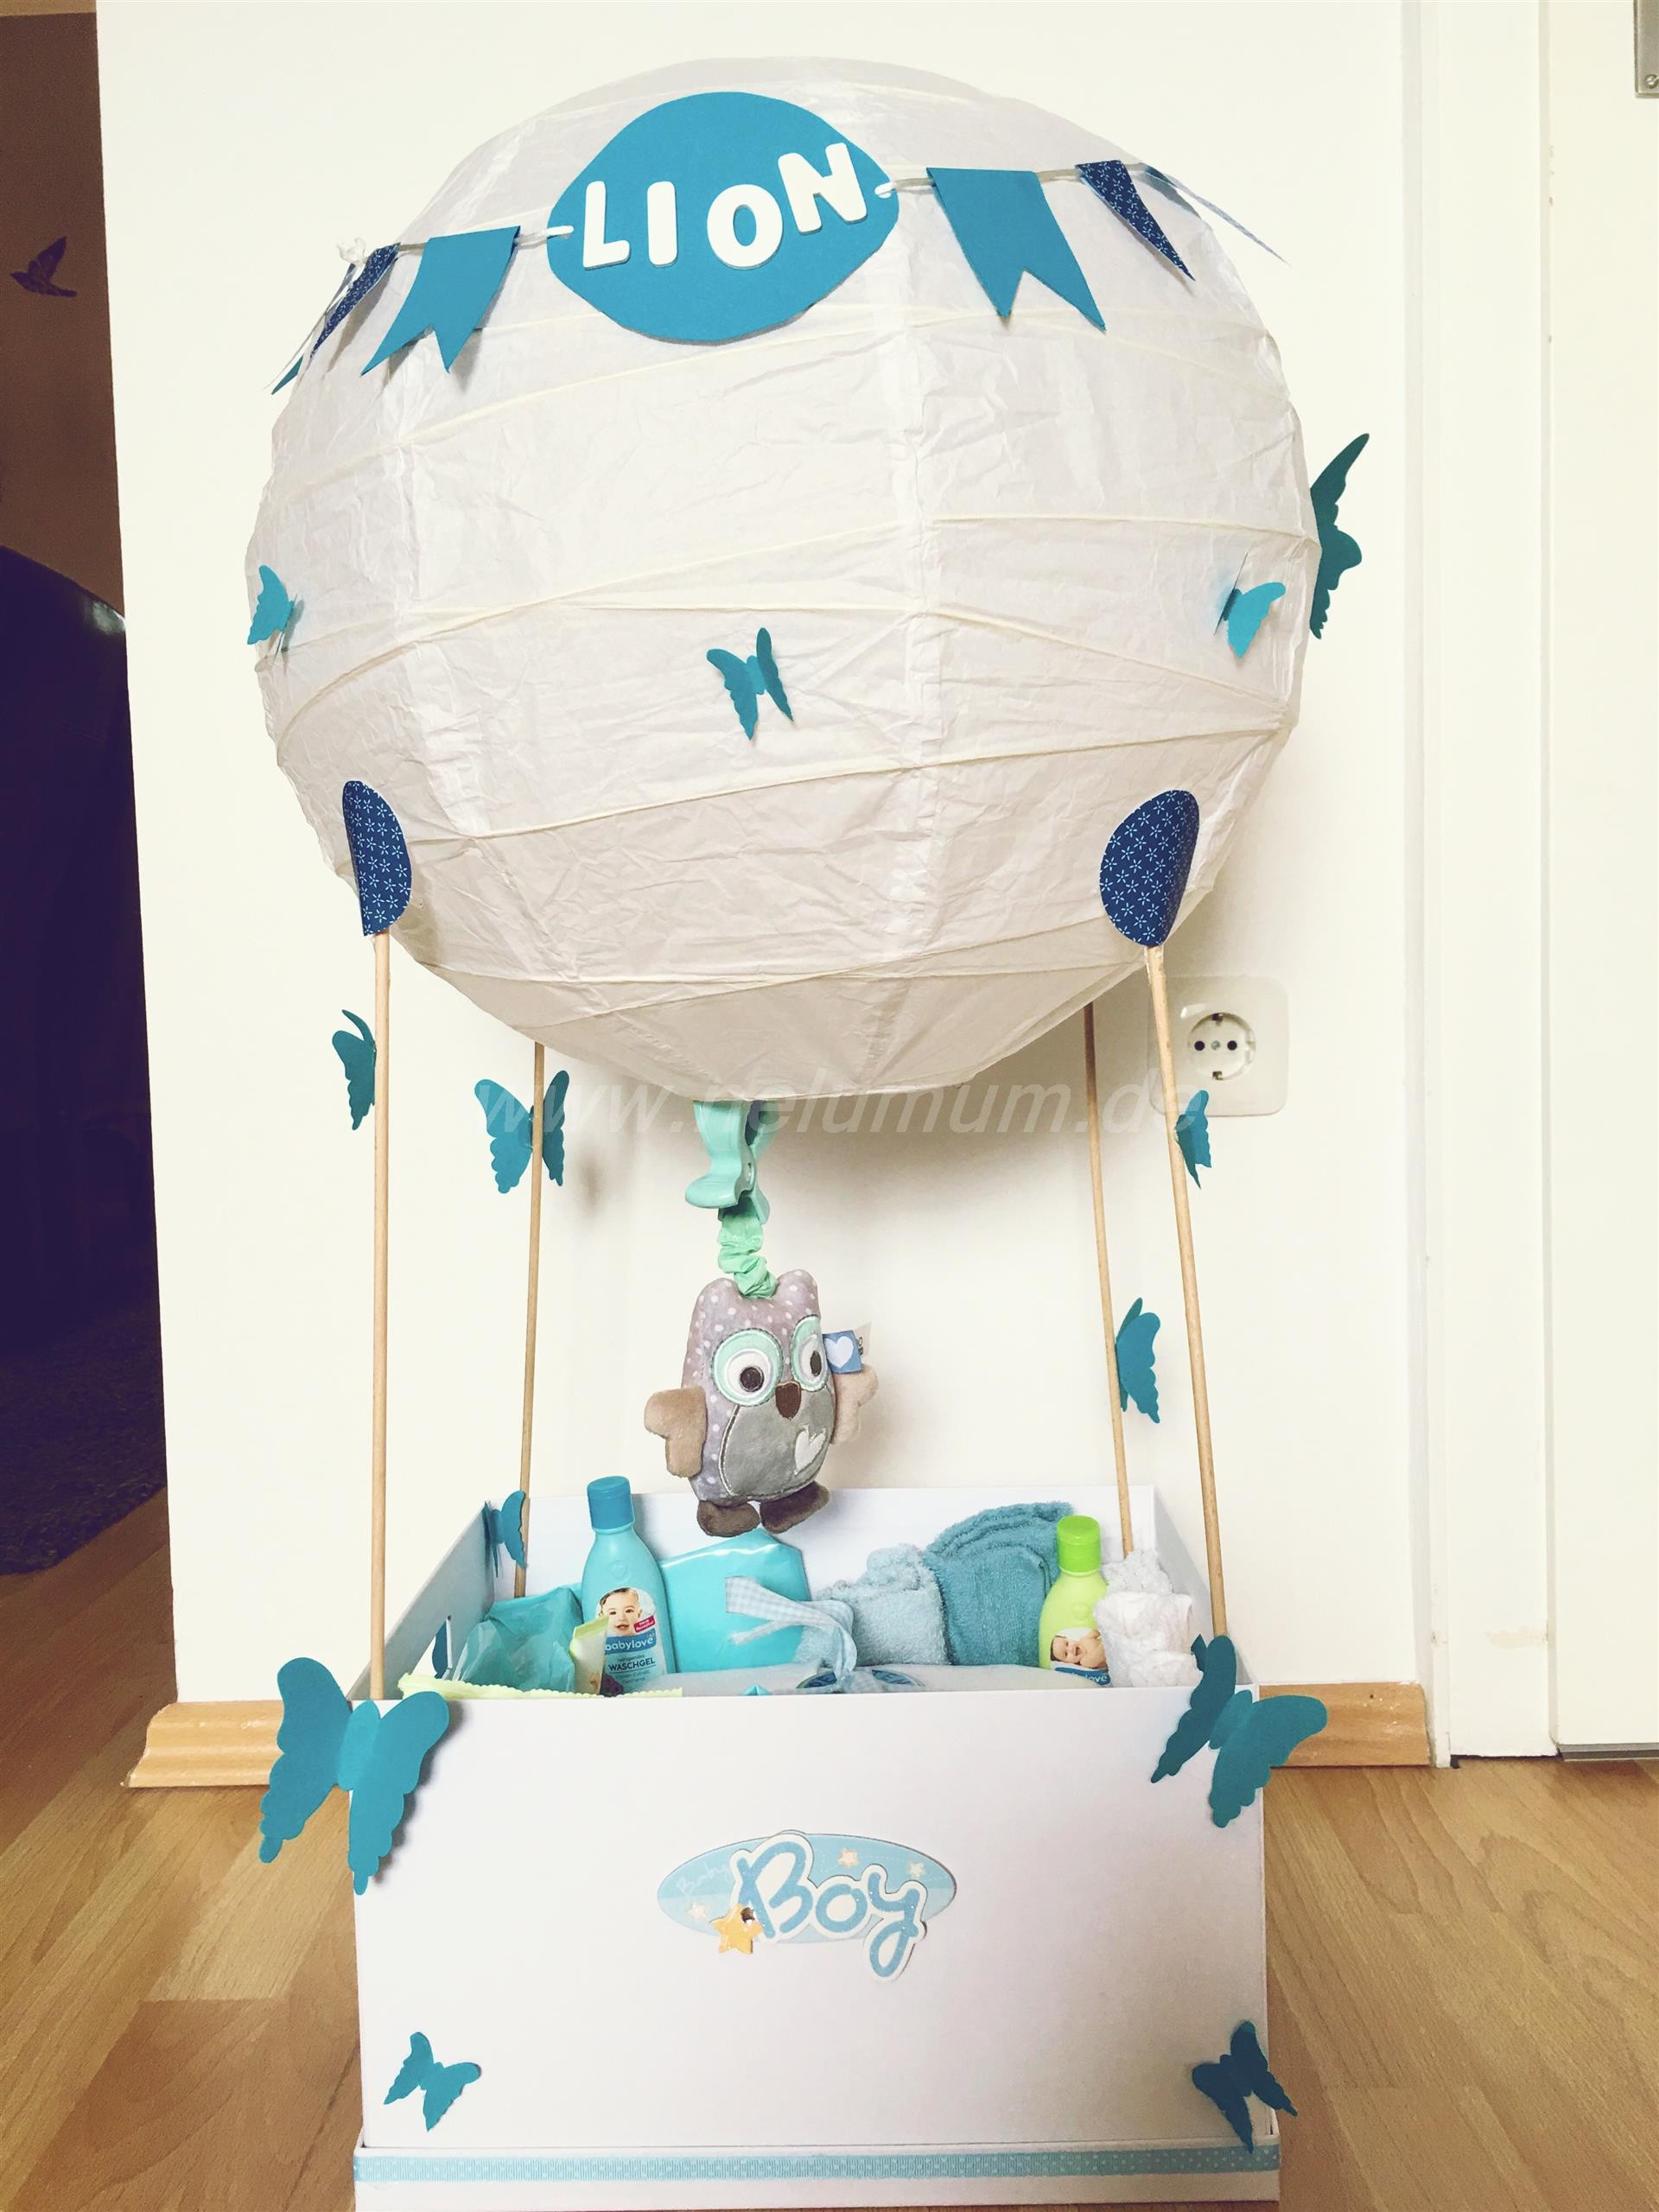 Originelle Geschenke Zur Geburt
 Heißluftballon zur Geburt NeLuMum